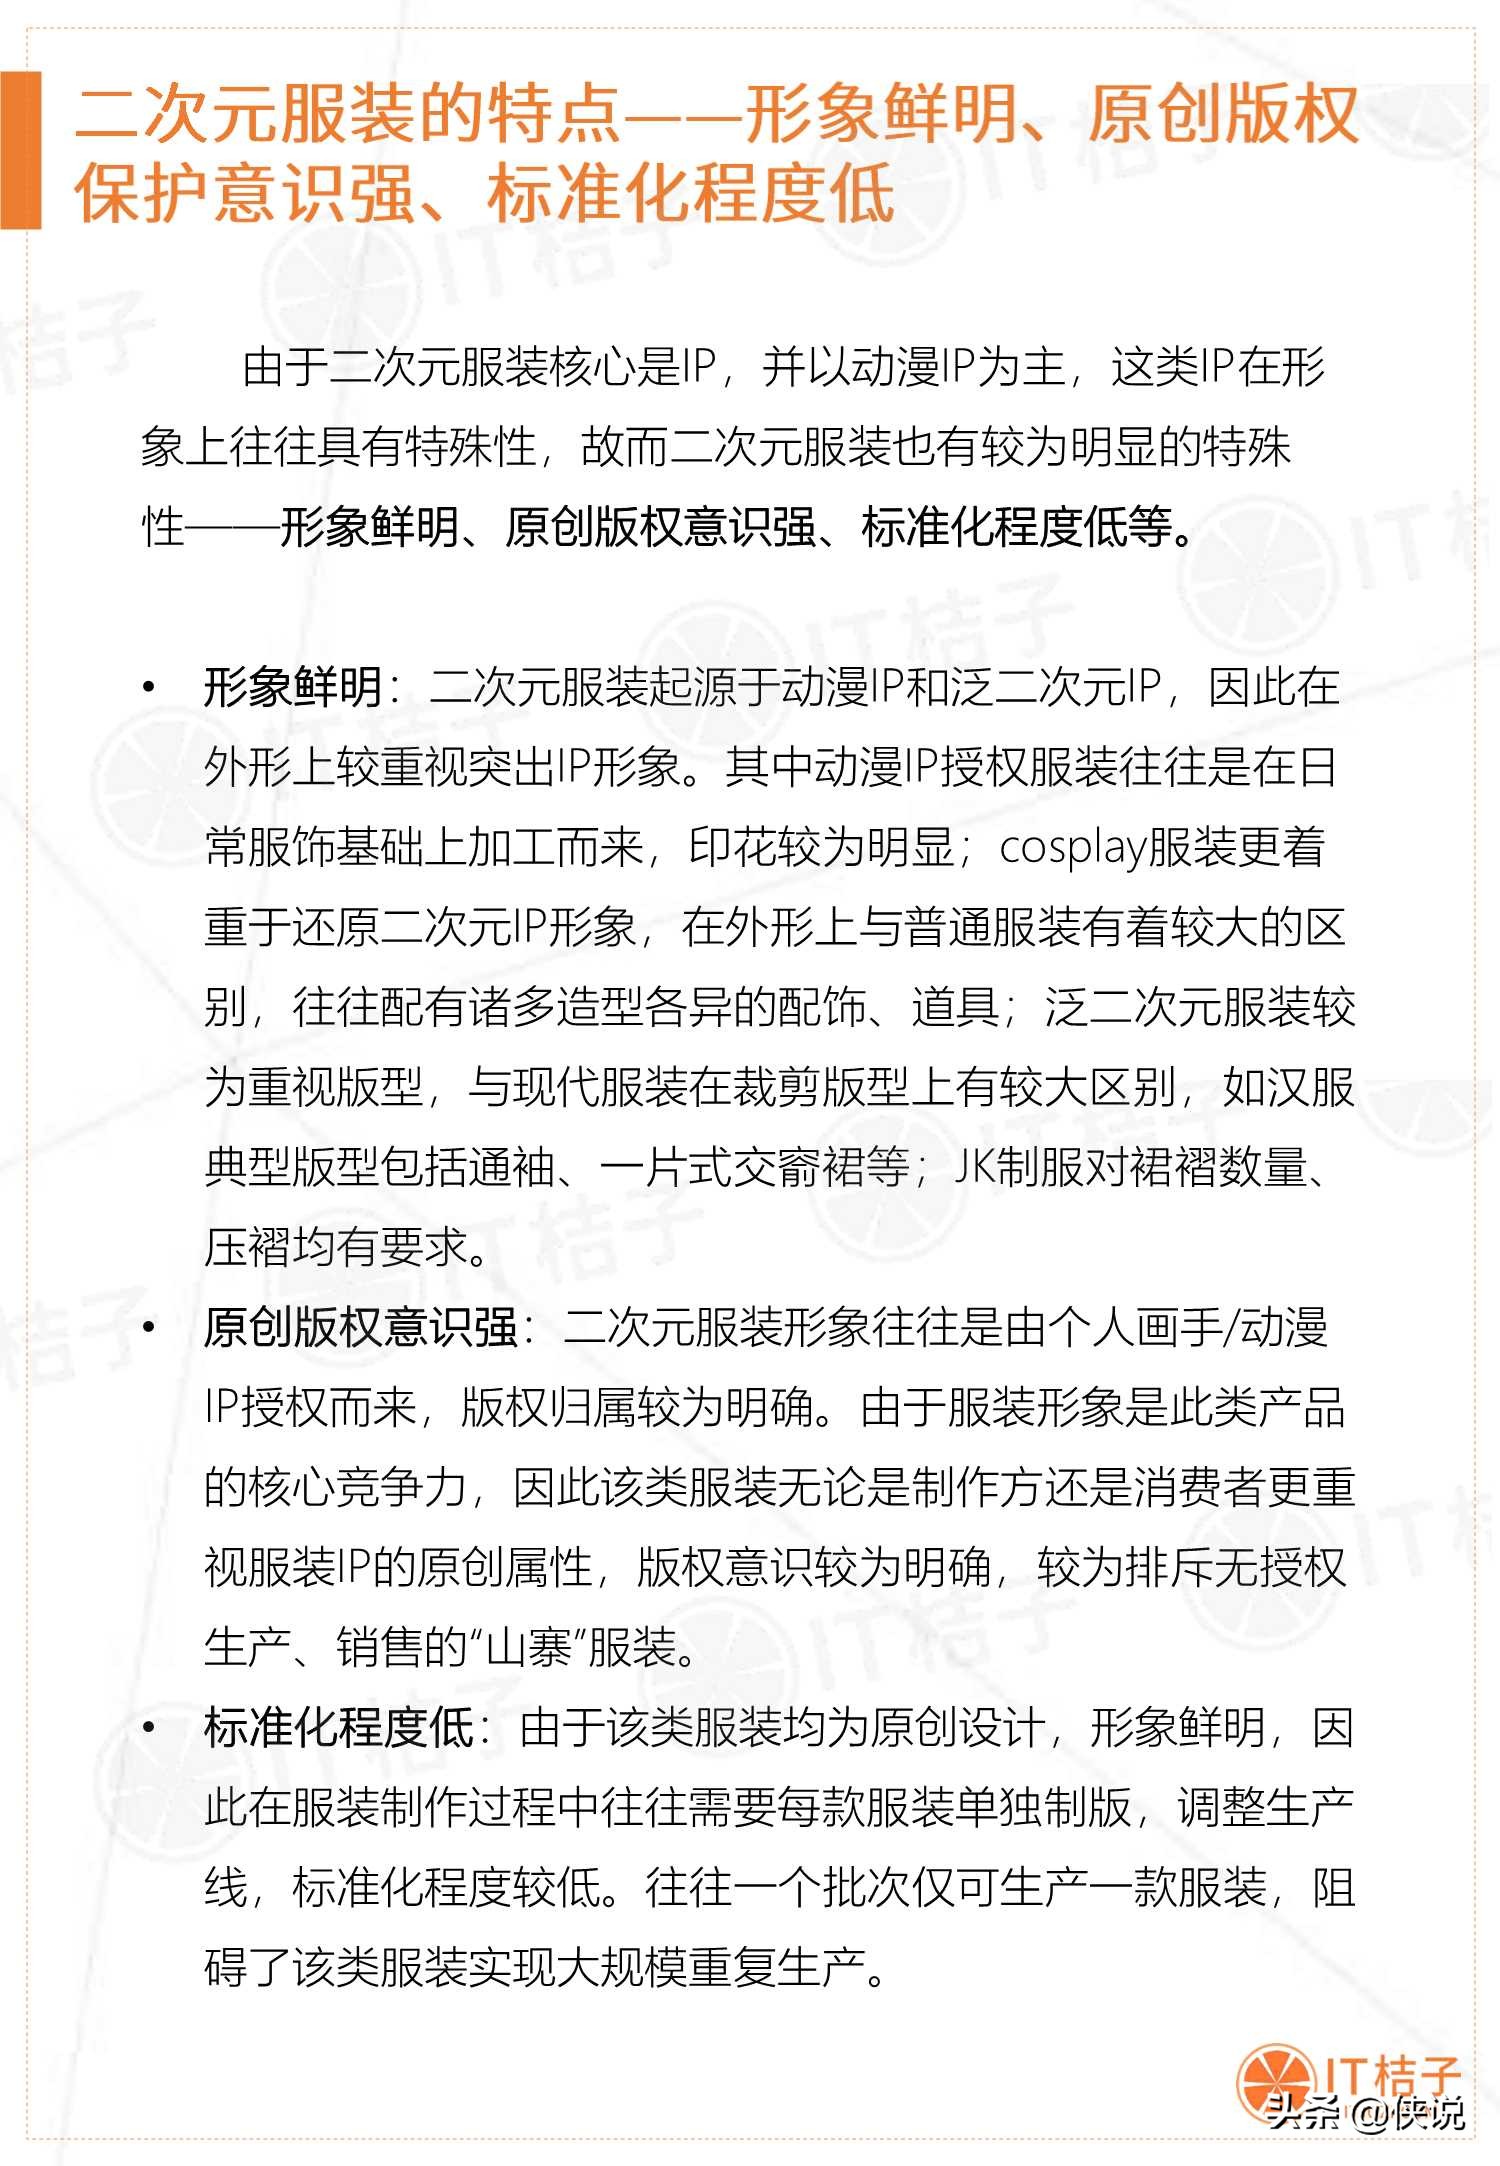 2019-2020年中国二次元服装消费市场分析报告